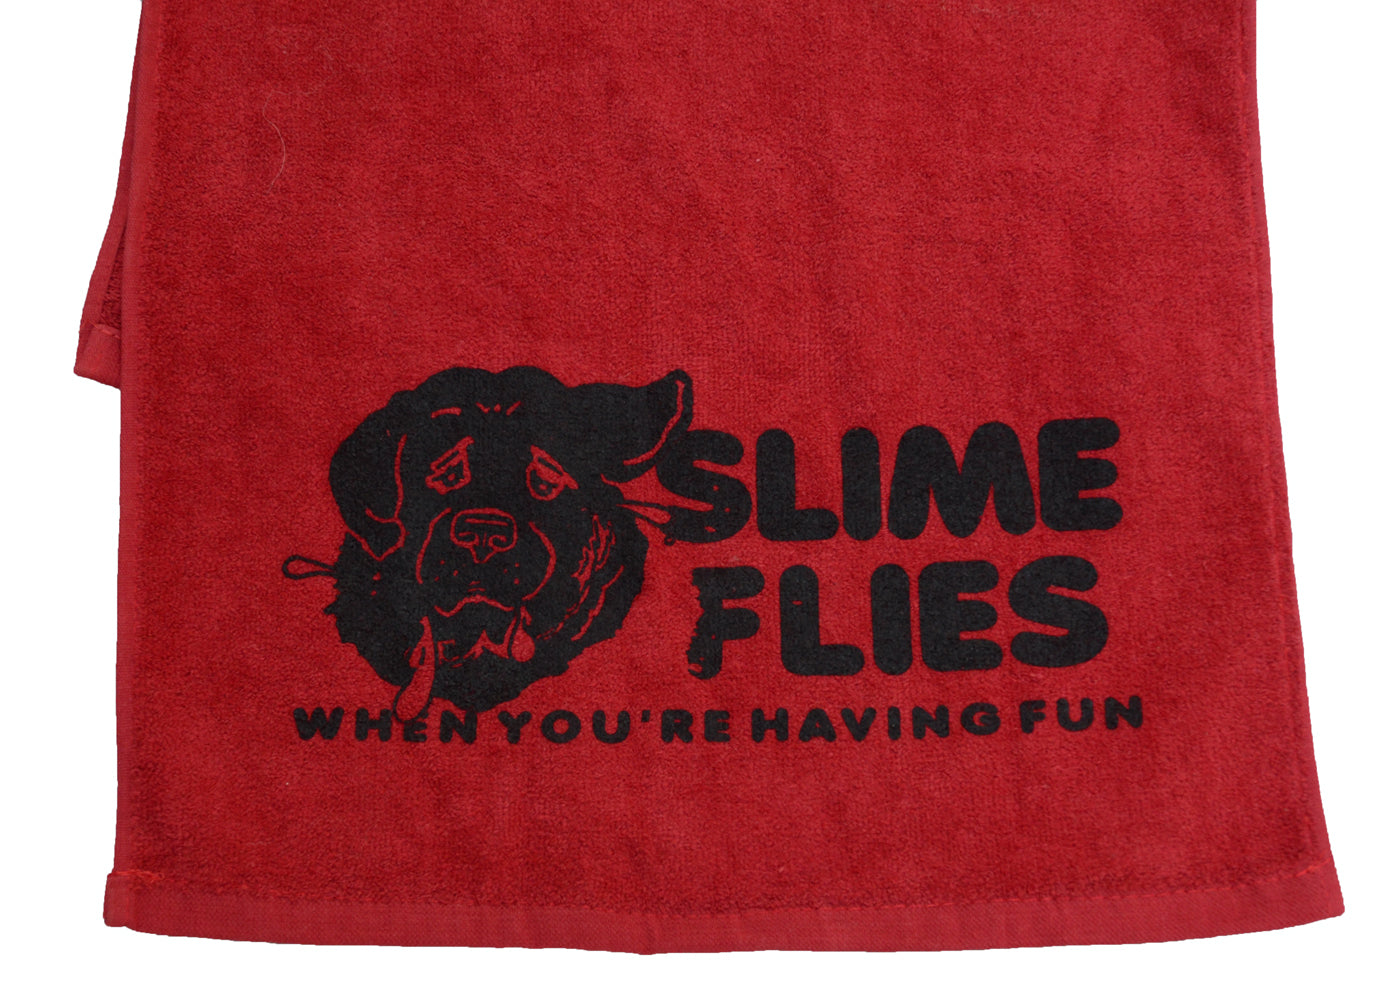 Slime Flies - Drool Towel (screen printed)